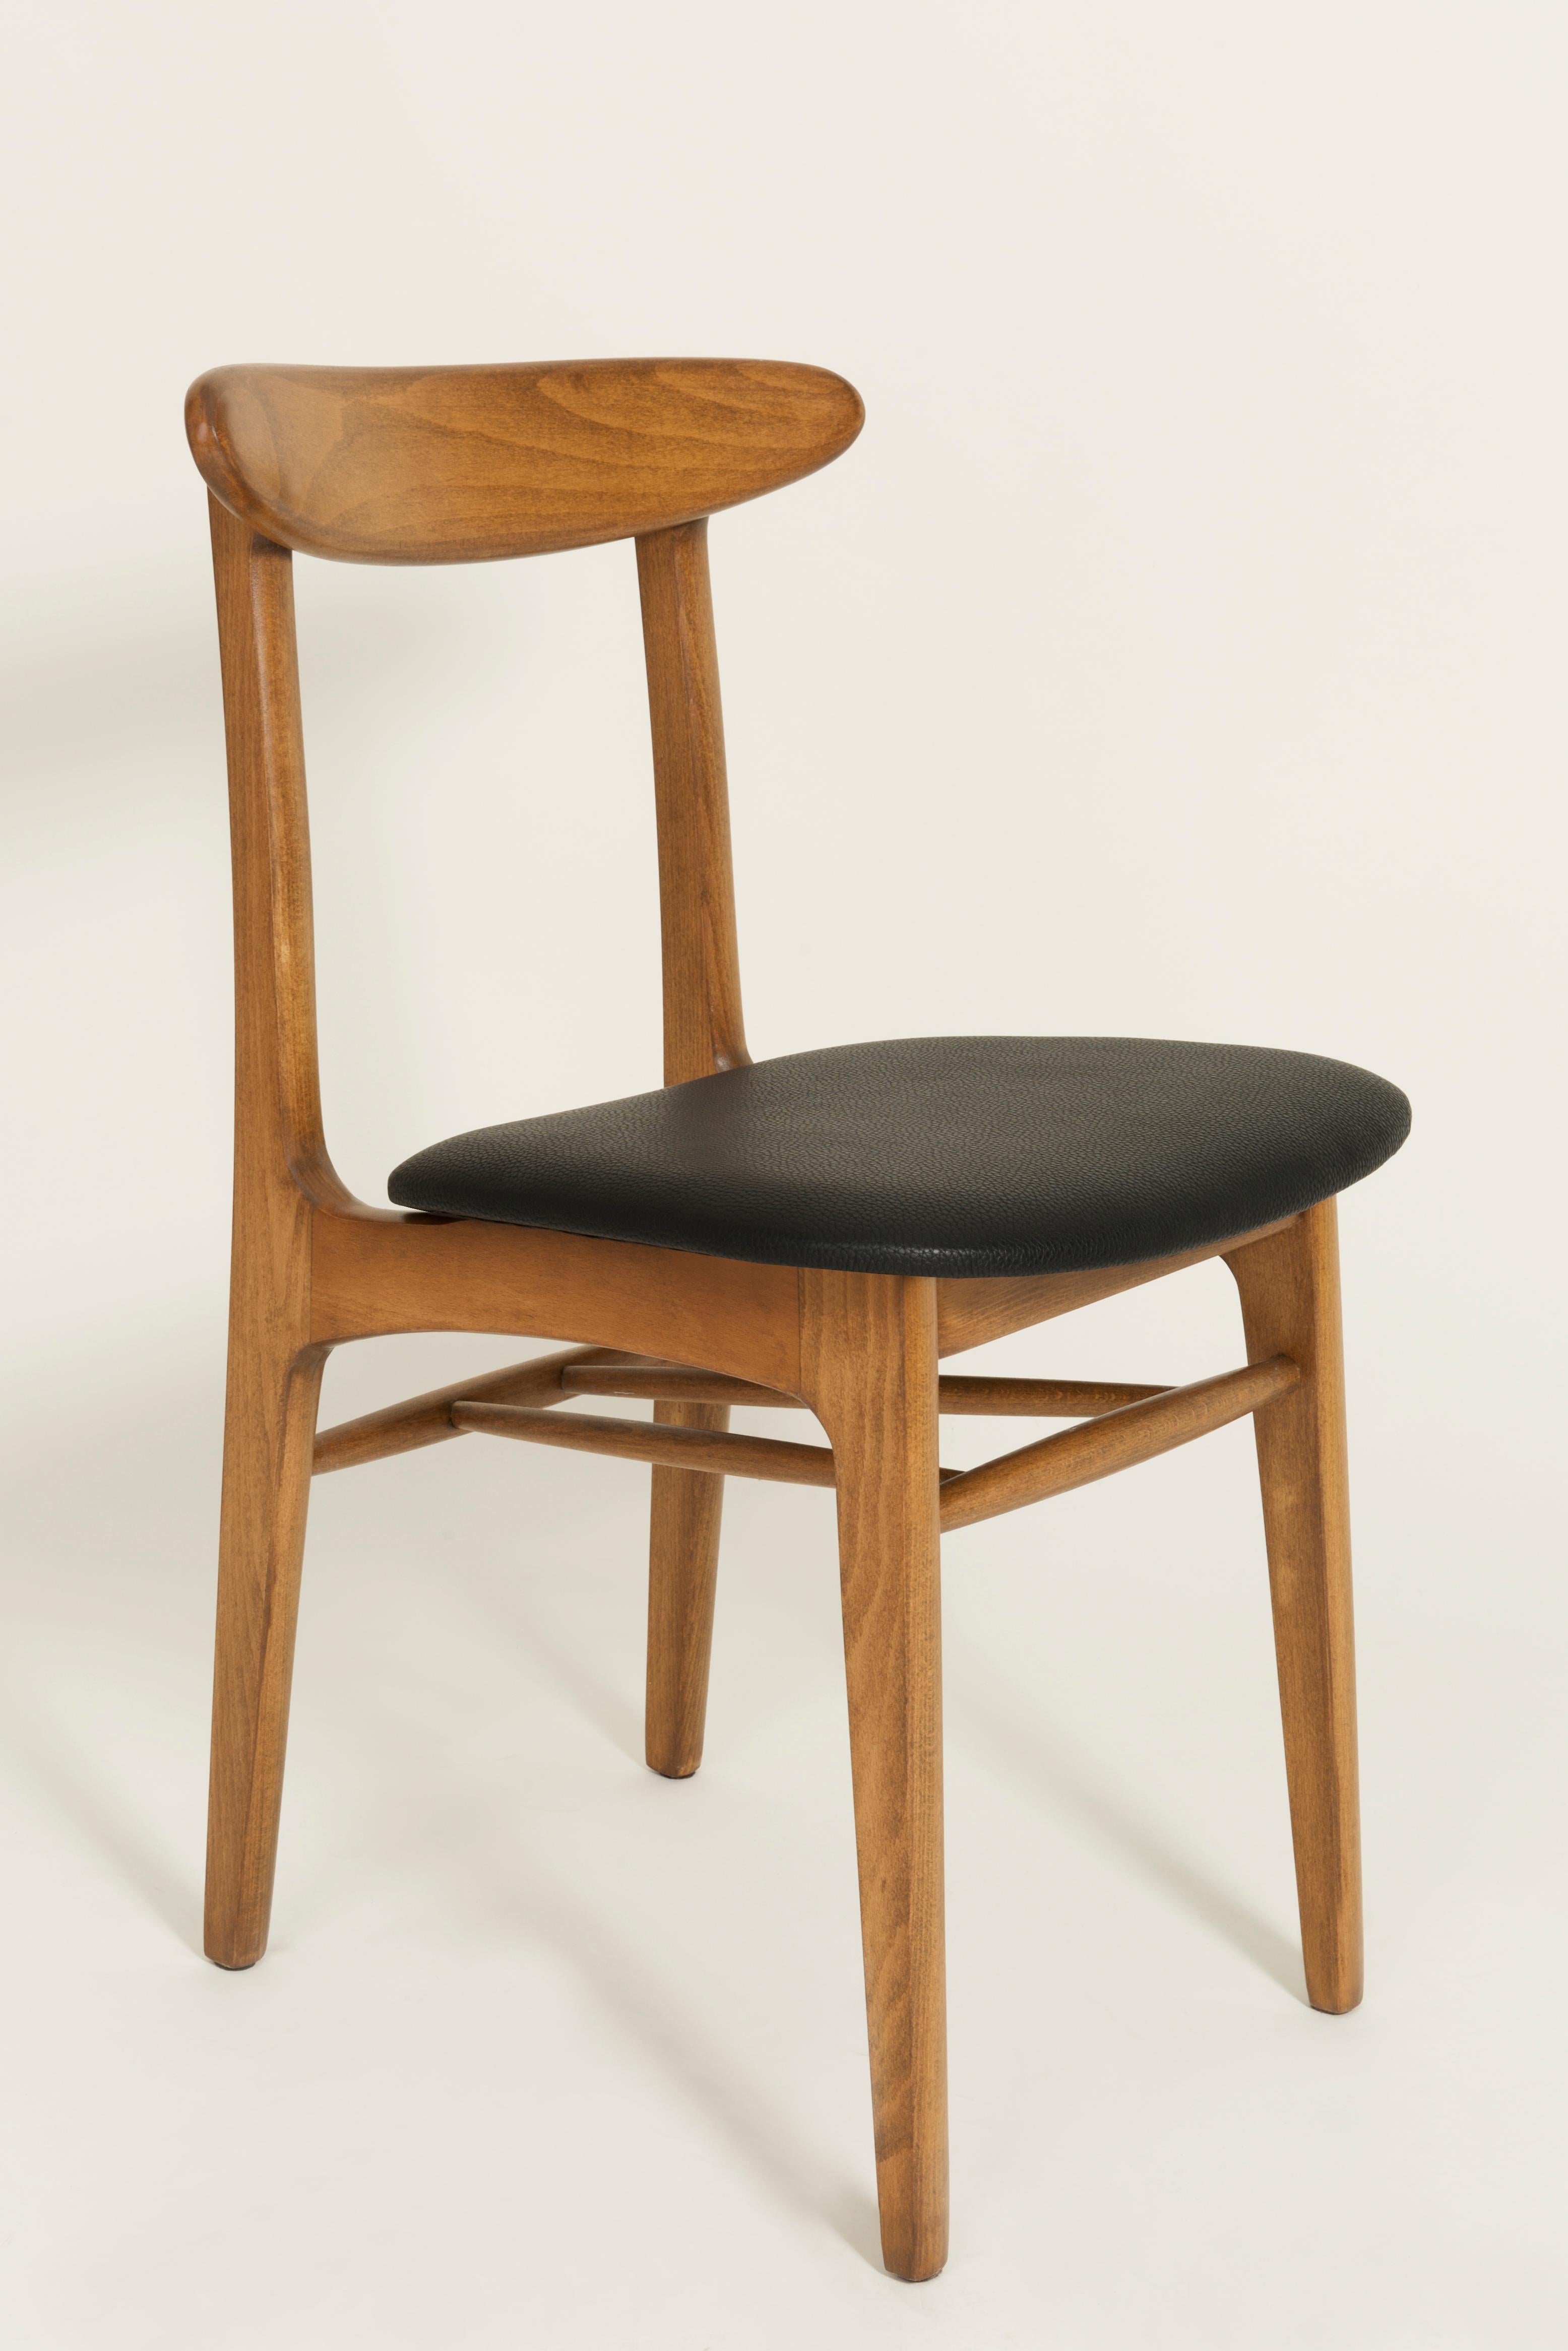 Les chaises de type 5908, conçues dans les années 1960 par Rajmund Teofil Halas, sont l'un des projets les plus reconnaissables du design polonais.

Les chaises ont une silhouette simple et moderniste. Ils se caractérisent par des formes épurées